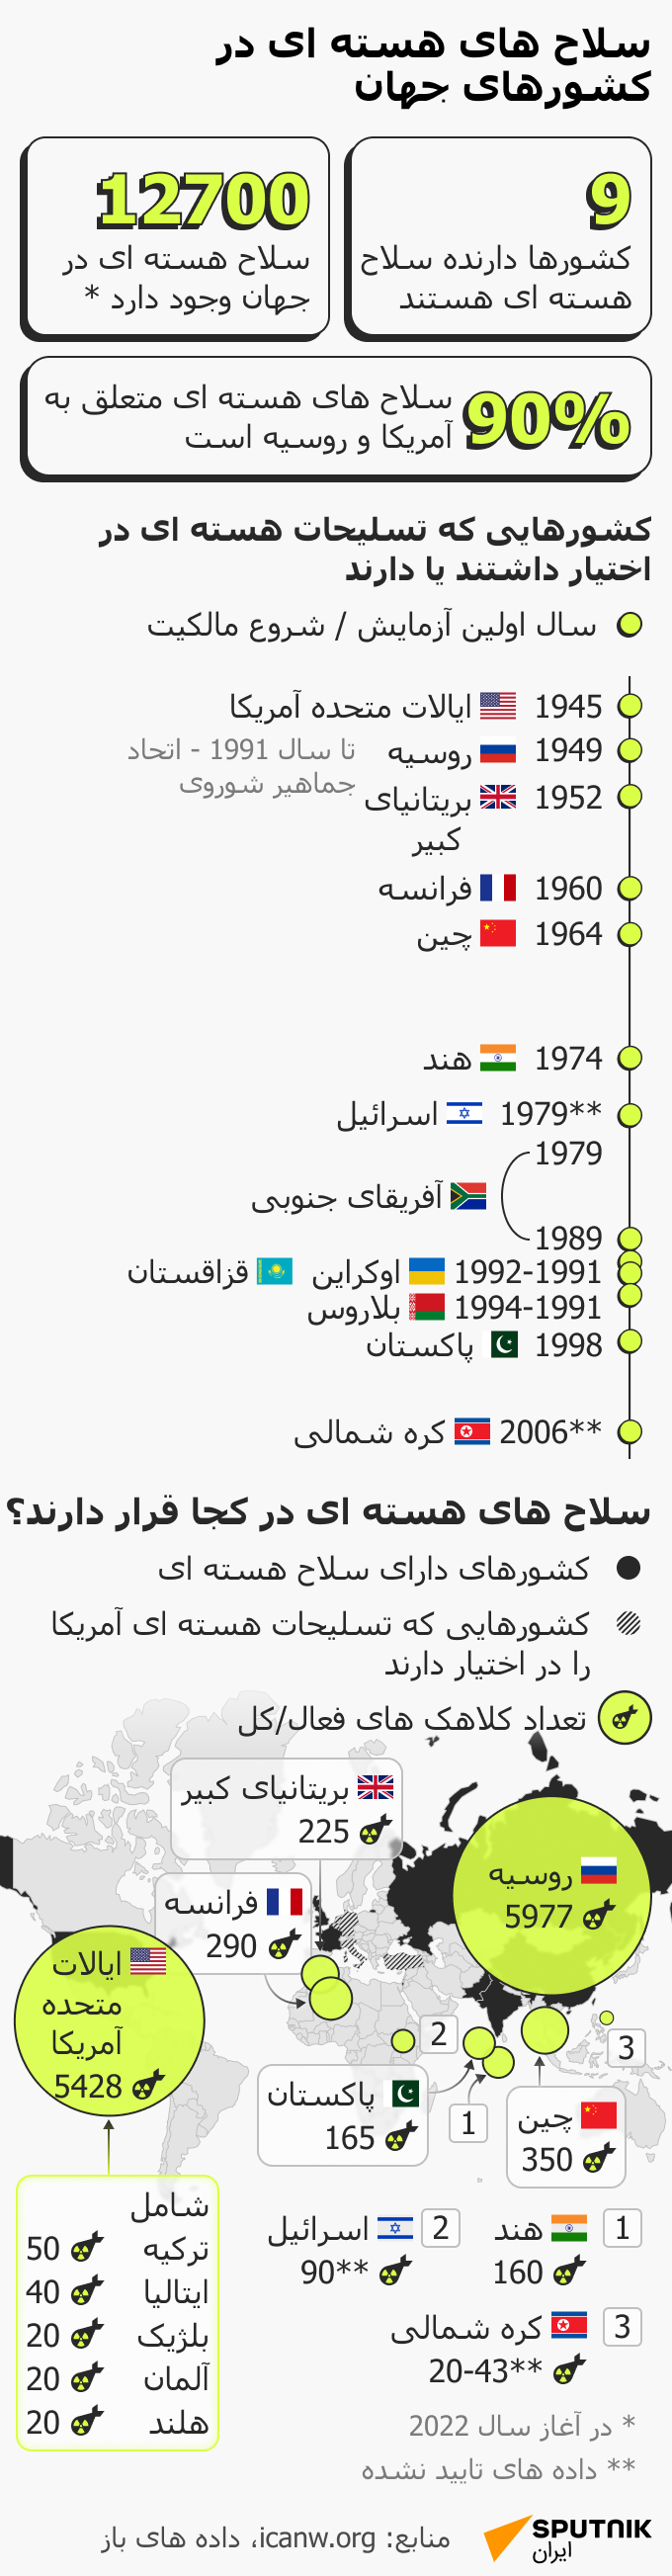 سلاح های هسته ای در کشورهای جهان - اسپوتنیک ایران  